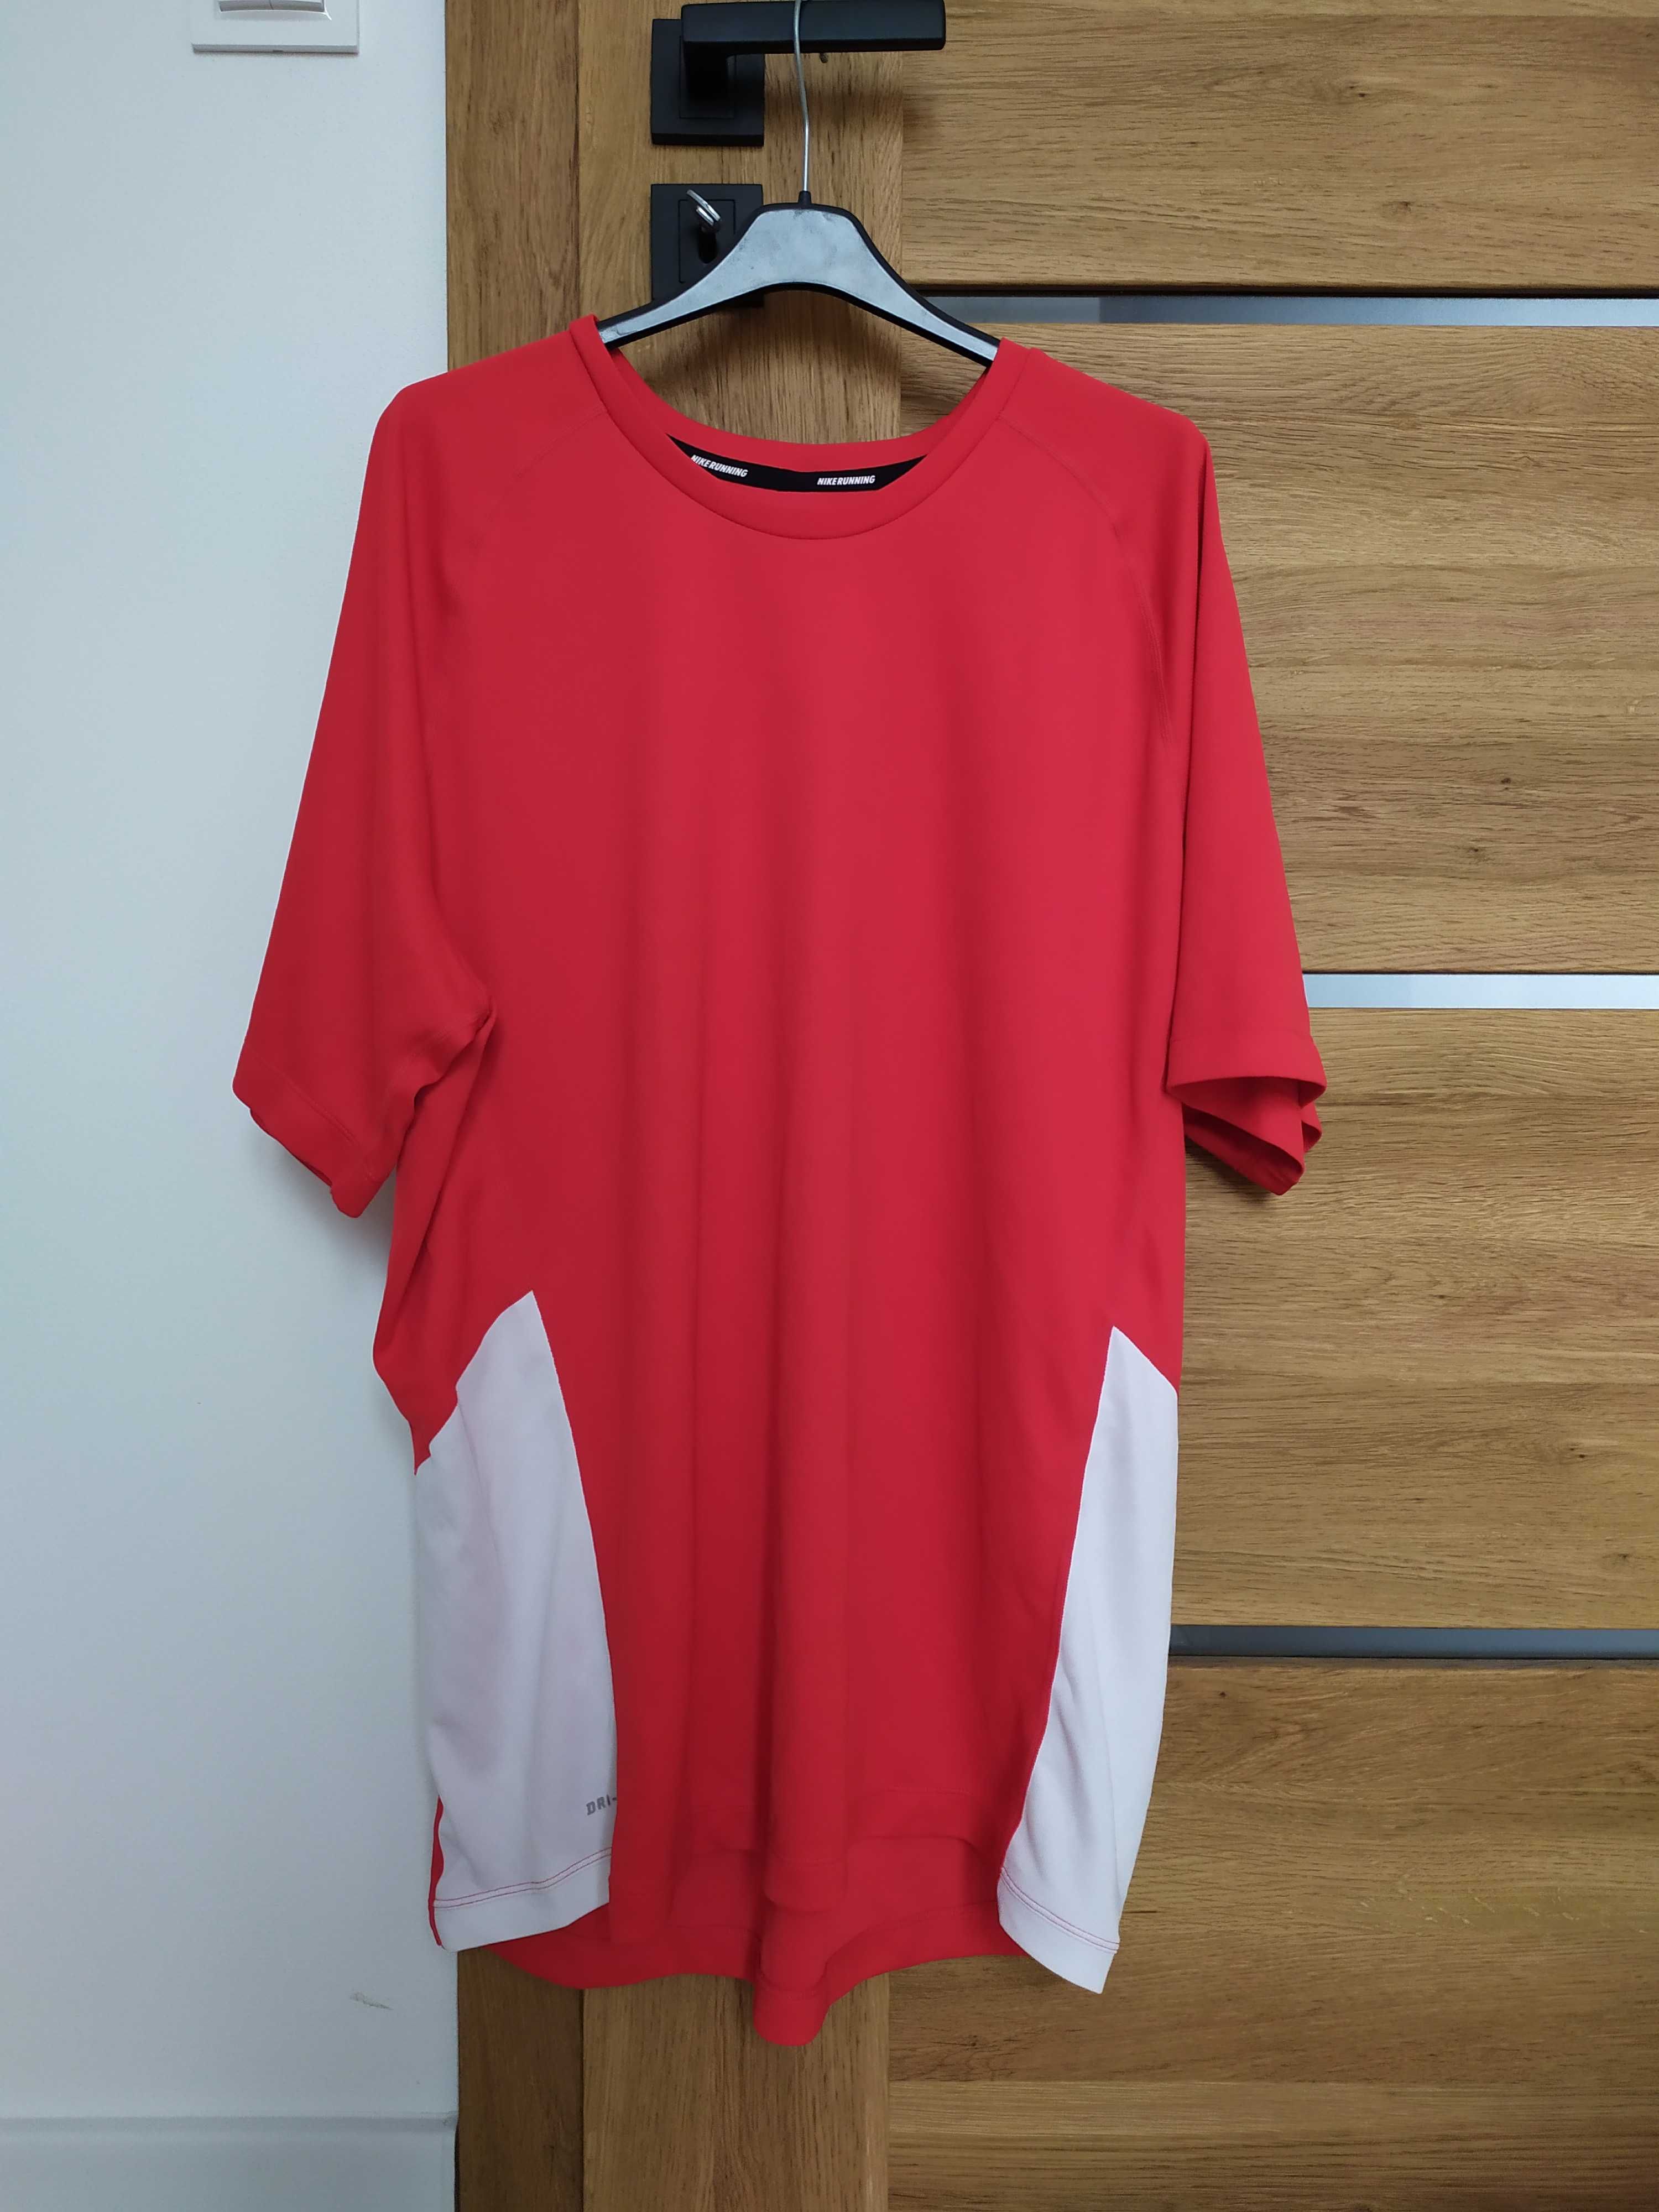 Koszulka sportowa czerwona nike XL